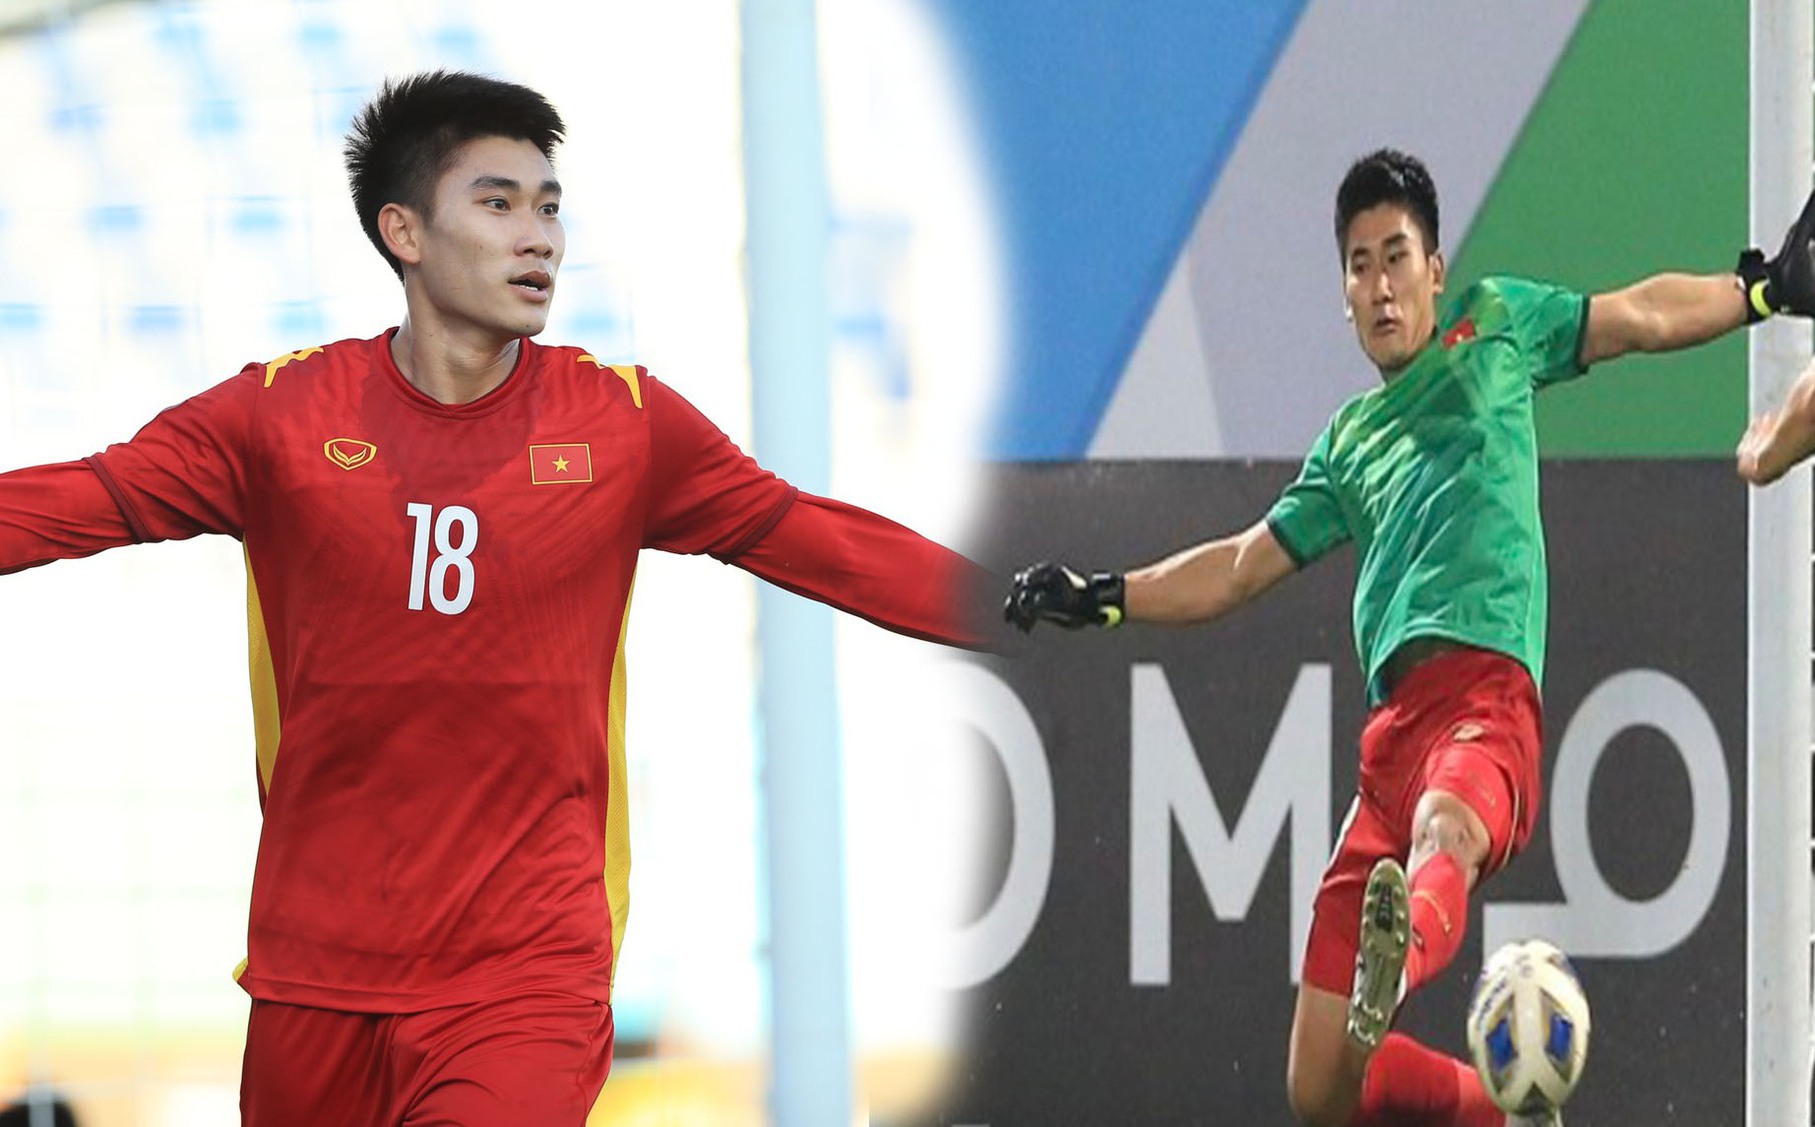 Nhâm Mạnh Dũng, cầu thủ được nhắc tới nhiều nhất sau trận U23 Việt Nam - U23 Saudi Arabia